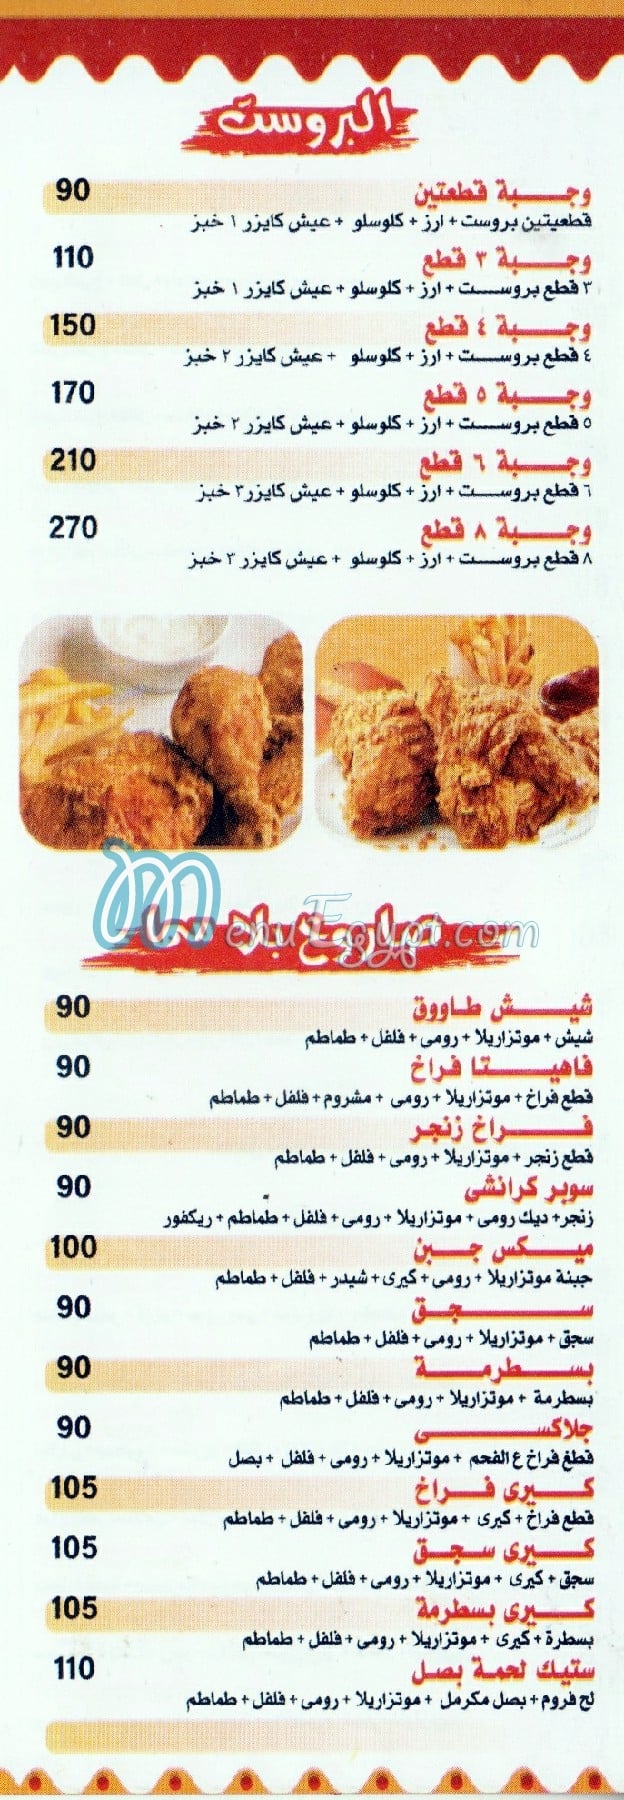 مطعم بيلا سما مصر